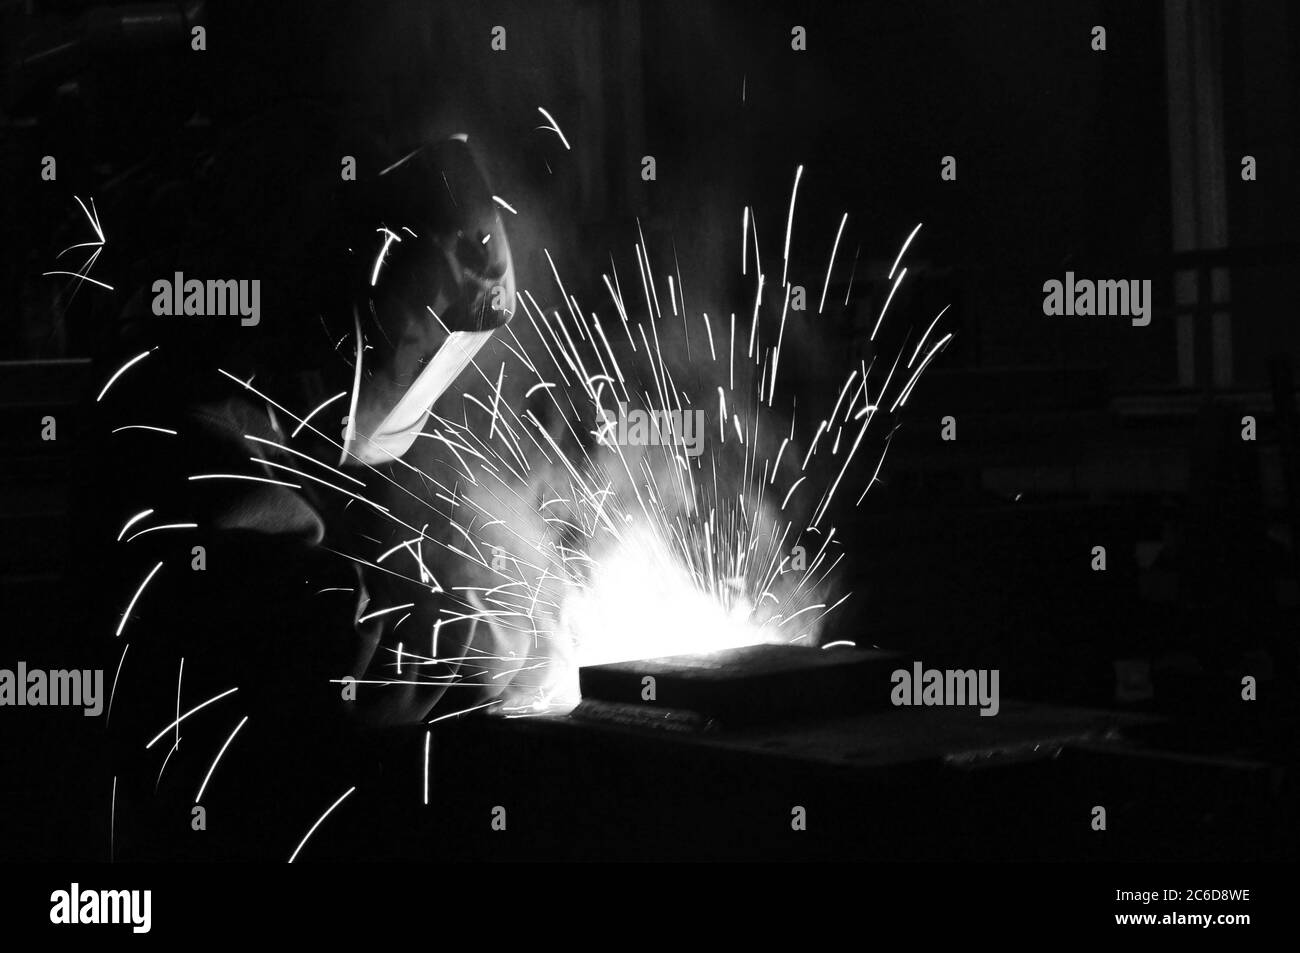 Le soudeur de l'usine est engagé dans la production de structures métalliques. Banque D'Images